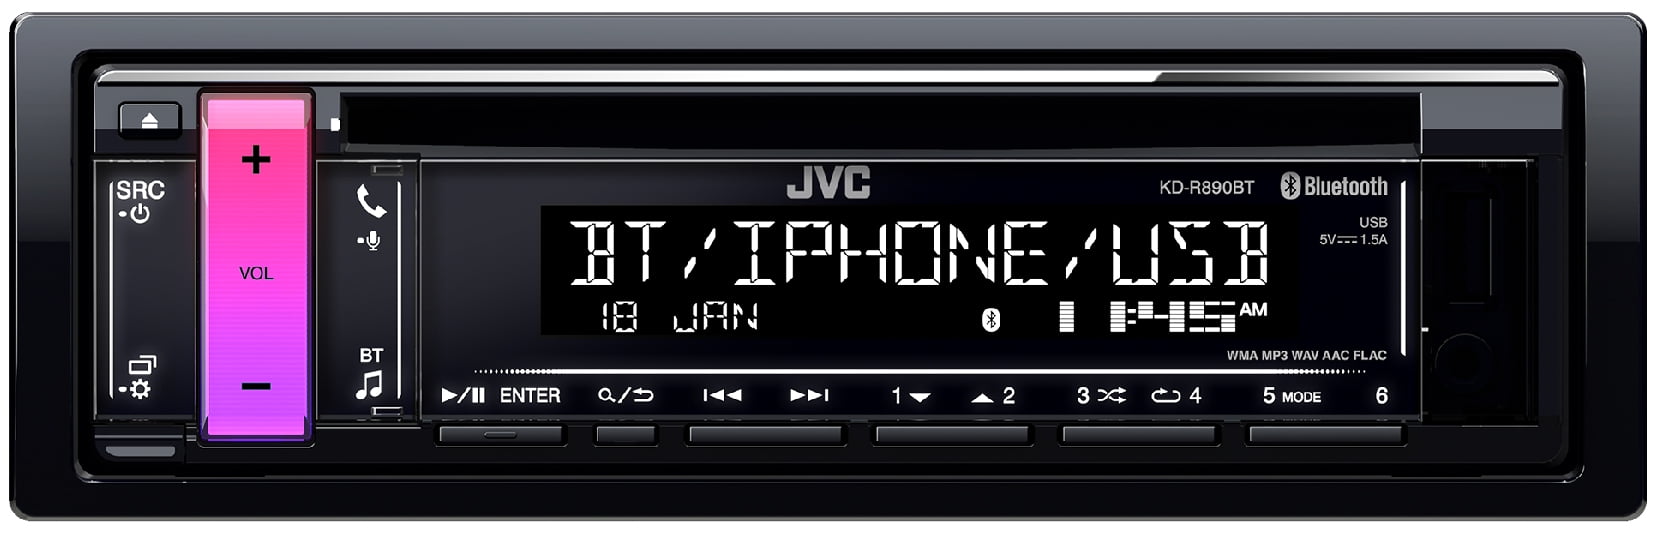 JVC aux 2din Usb mp3 Bluetooth Autoradio Pour AUDI a3 03-12 8p Quadlock